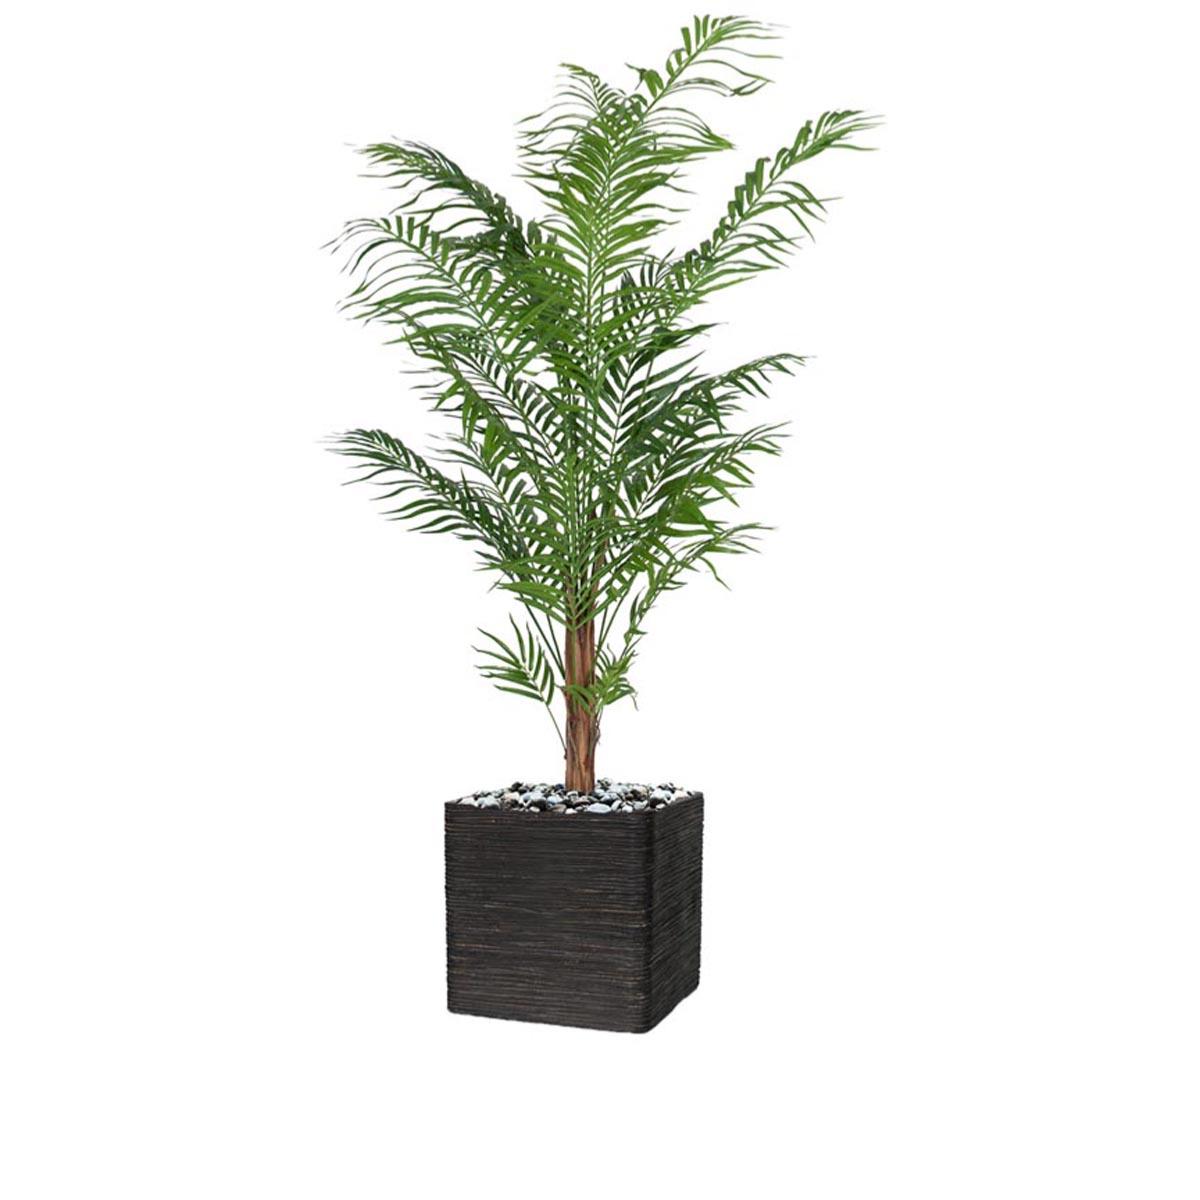 Palmier Areca artificiel H 210 cm sur tronc en pot